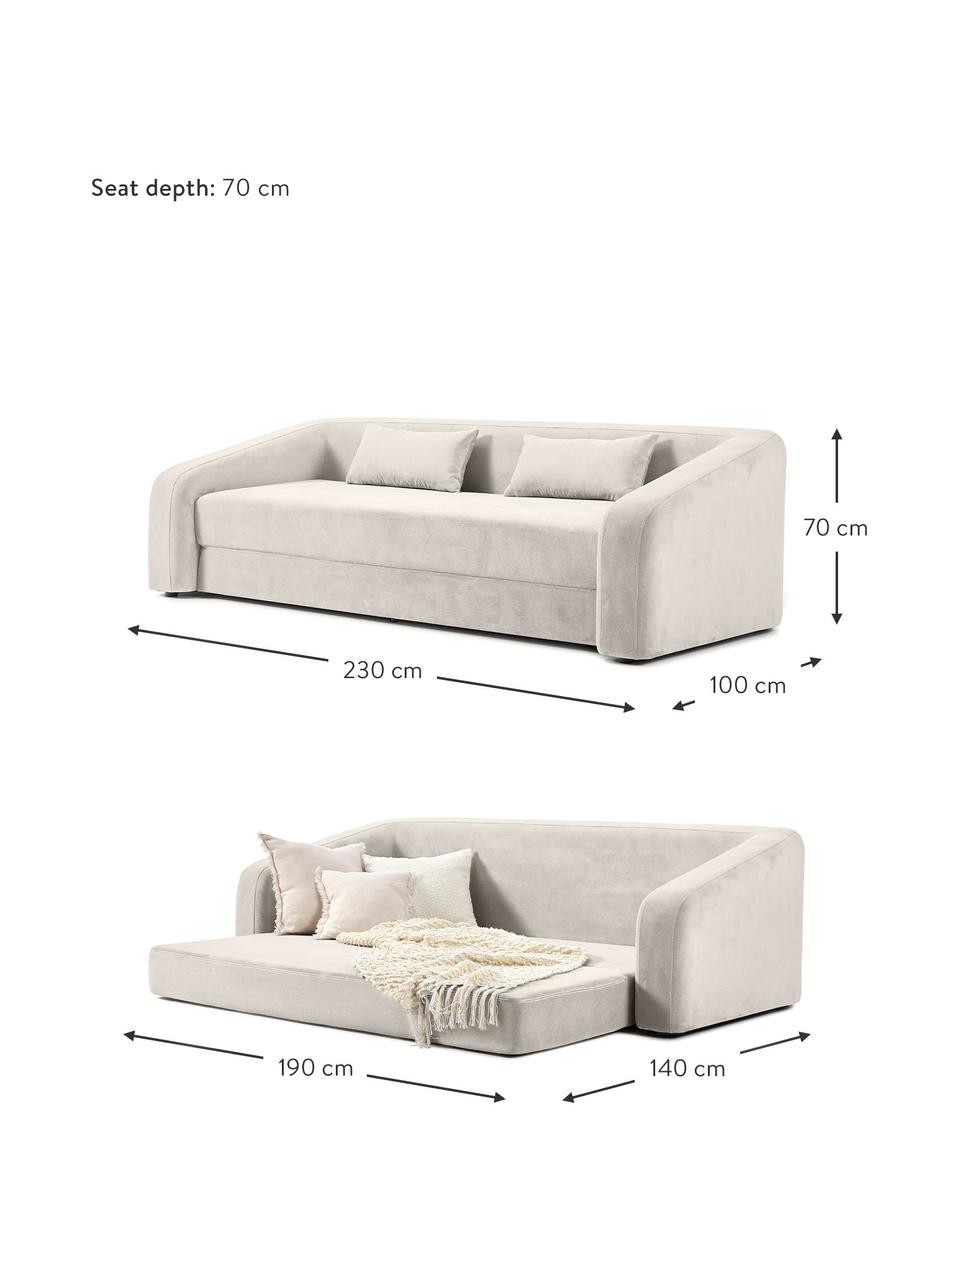 Sofa rozkładana Eliot (3-osobowa), Tapicerka: 88% poliester, 12% nylon , Nogi: tworzywo sztuczne, Jasnoszara tkanina, S 230 x W 70 cm